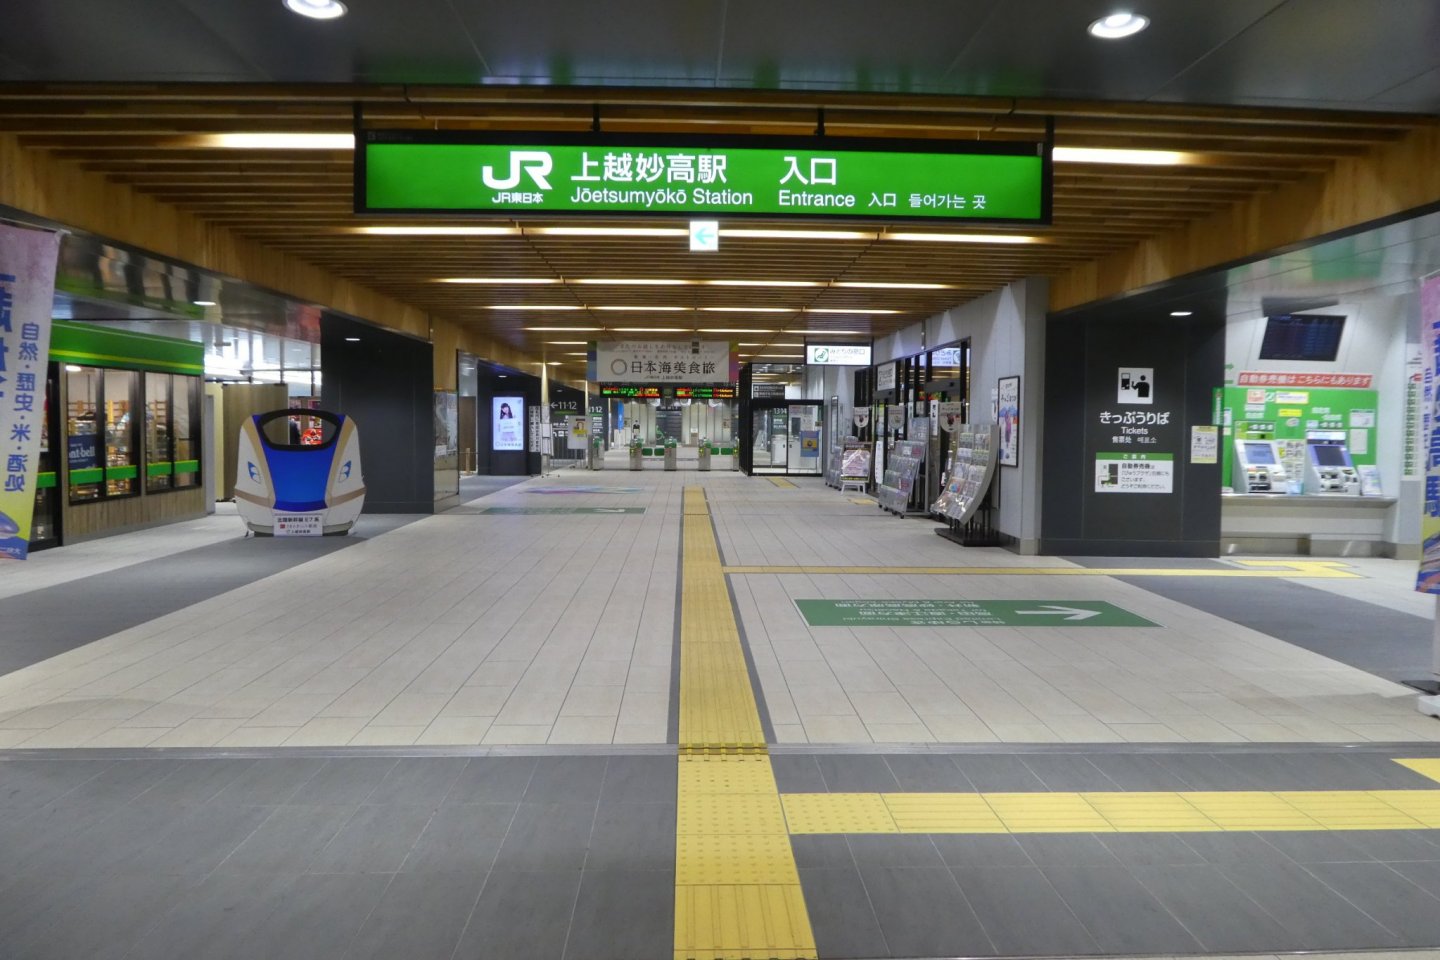 Joetsumyoko Station was opened in 2015